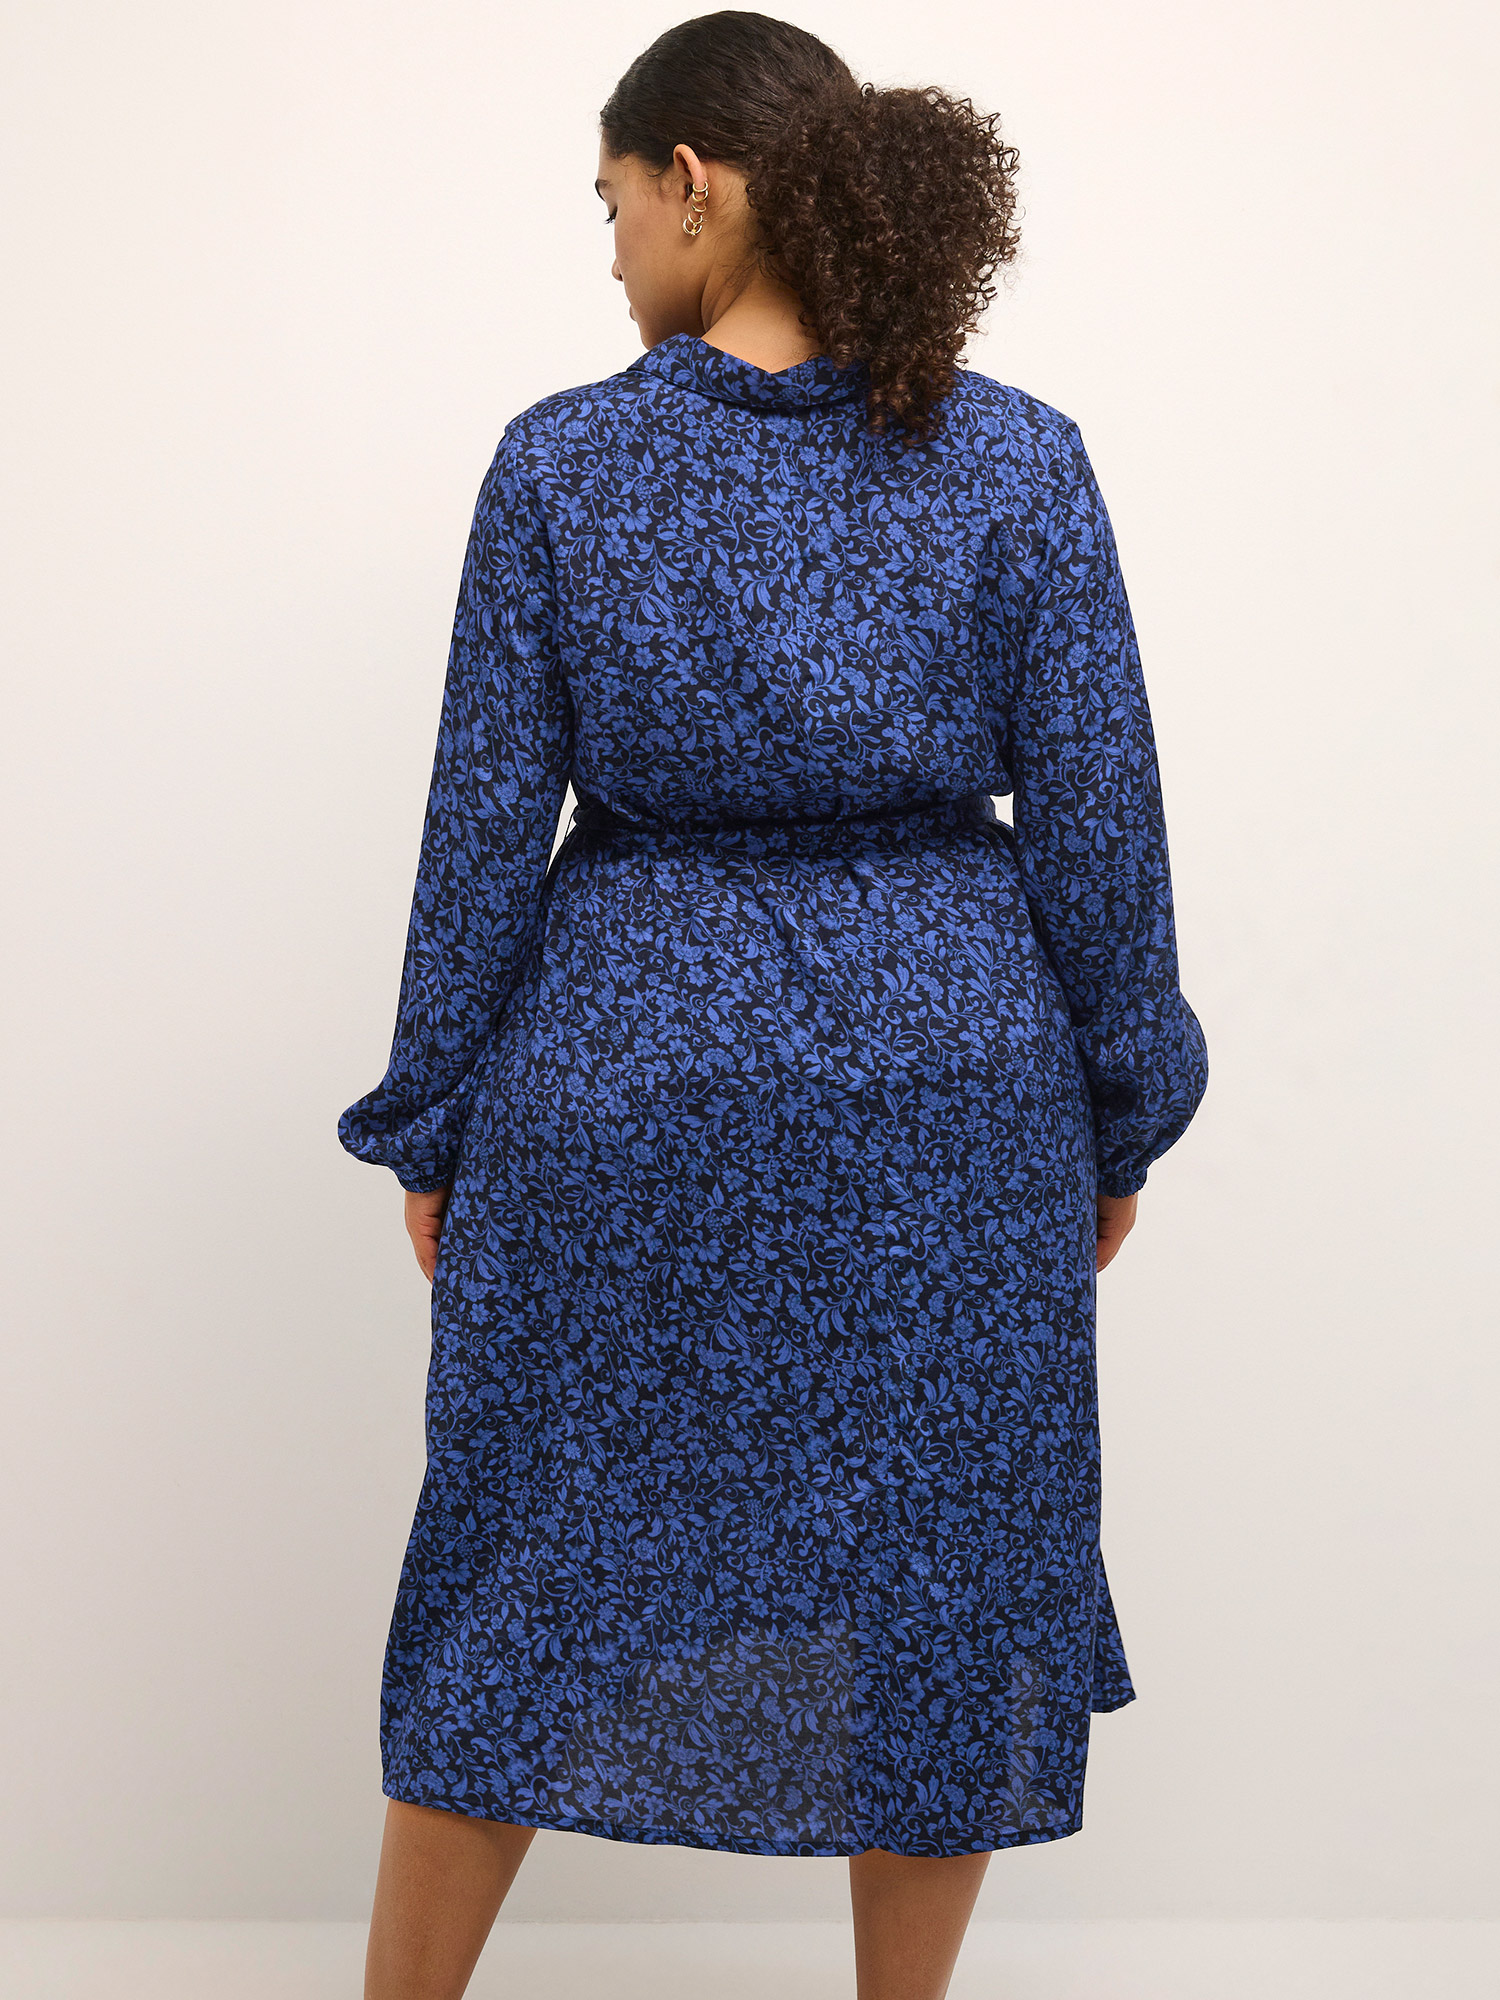 MIRANA - Sort viskose skjorte kjole med blåt mønster fra Kaffe Curve